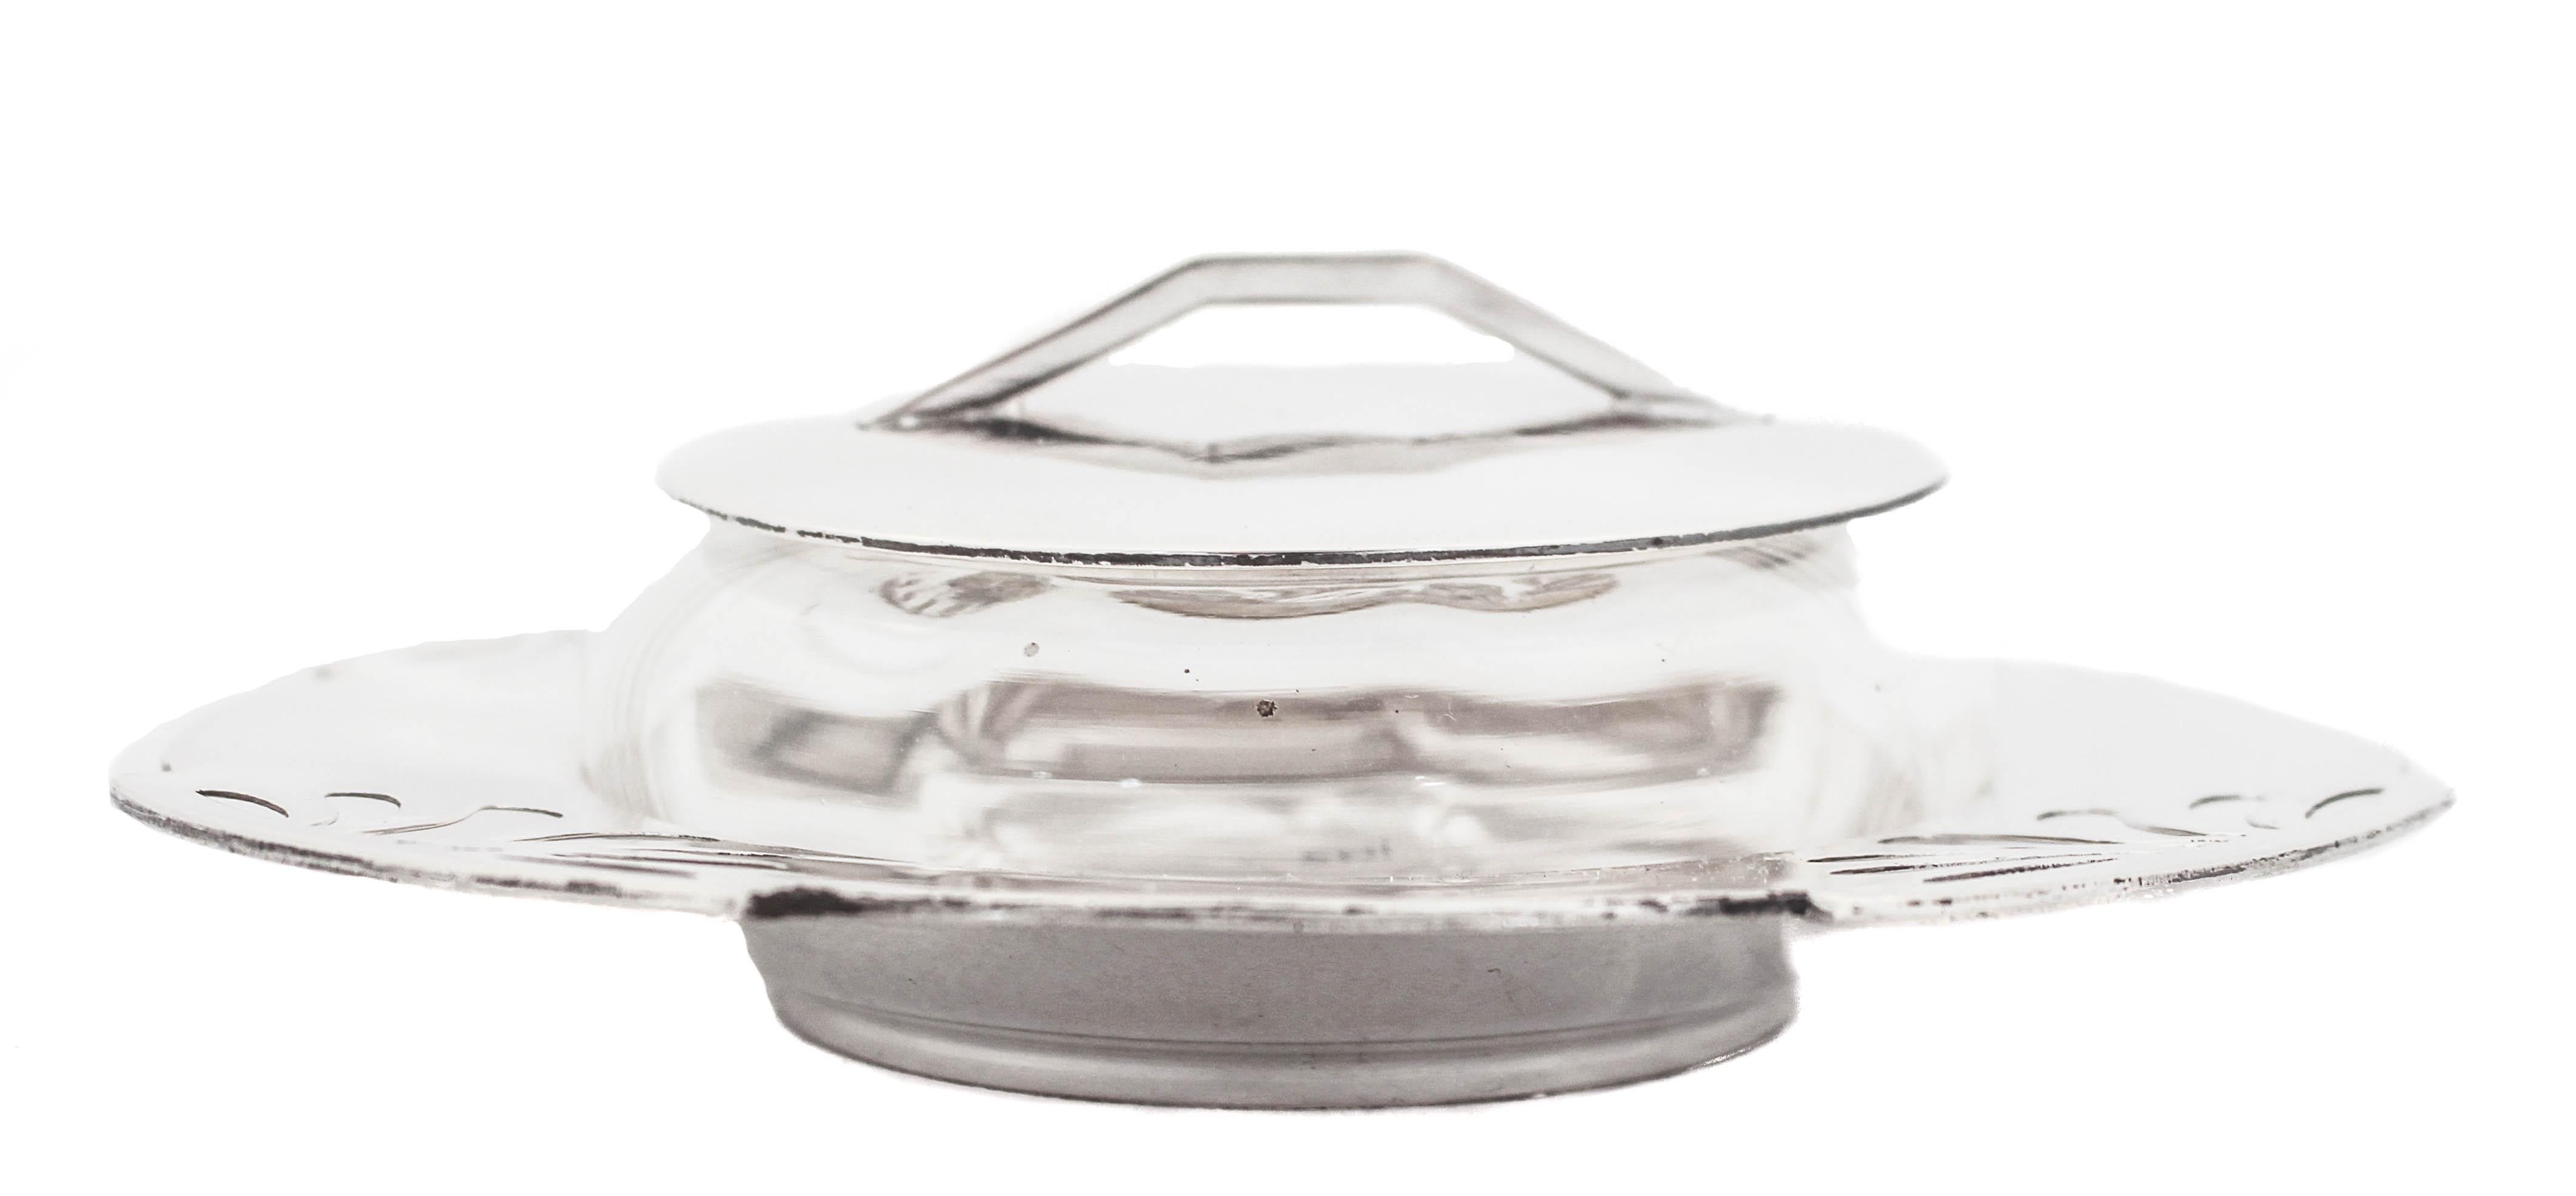 Nous vous proposons un rare plat à caviar en argent sterling avec un bol en verre et un couvercle en argent.  Le plat conçu dans le style Bauhaus avec son design découpé et la poignée inhabituelle sur le couvercle.  L'influence la plus importante